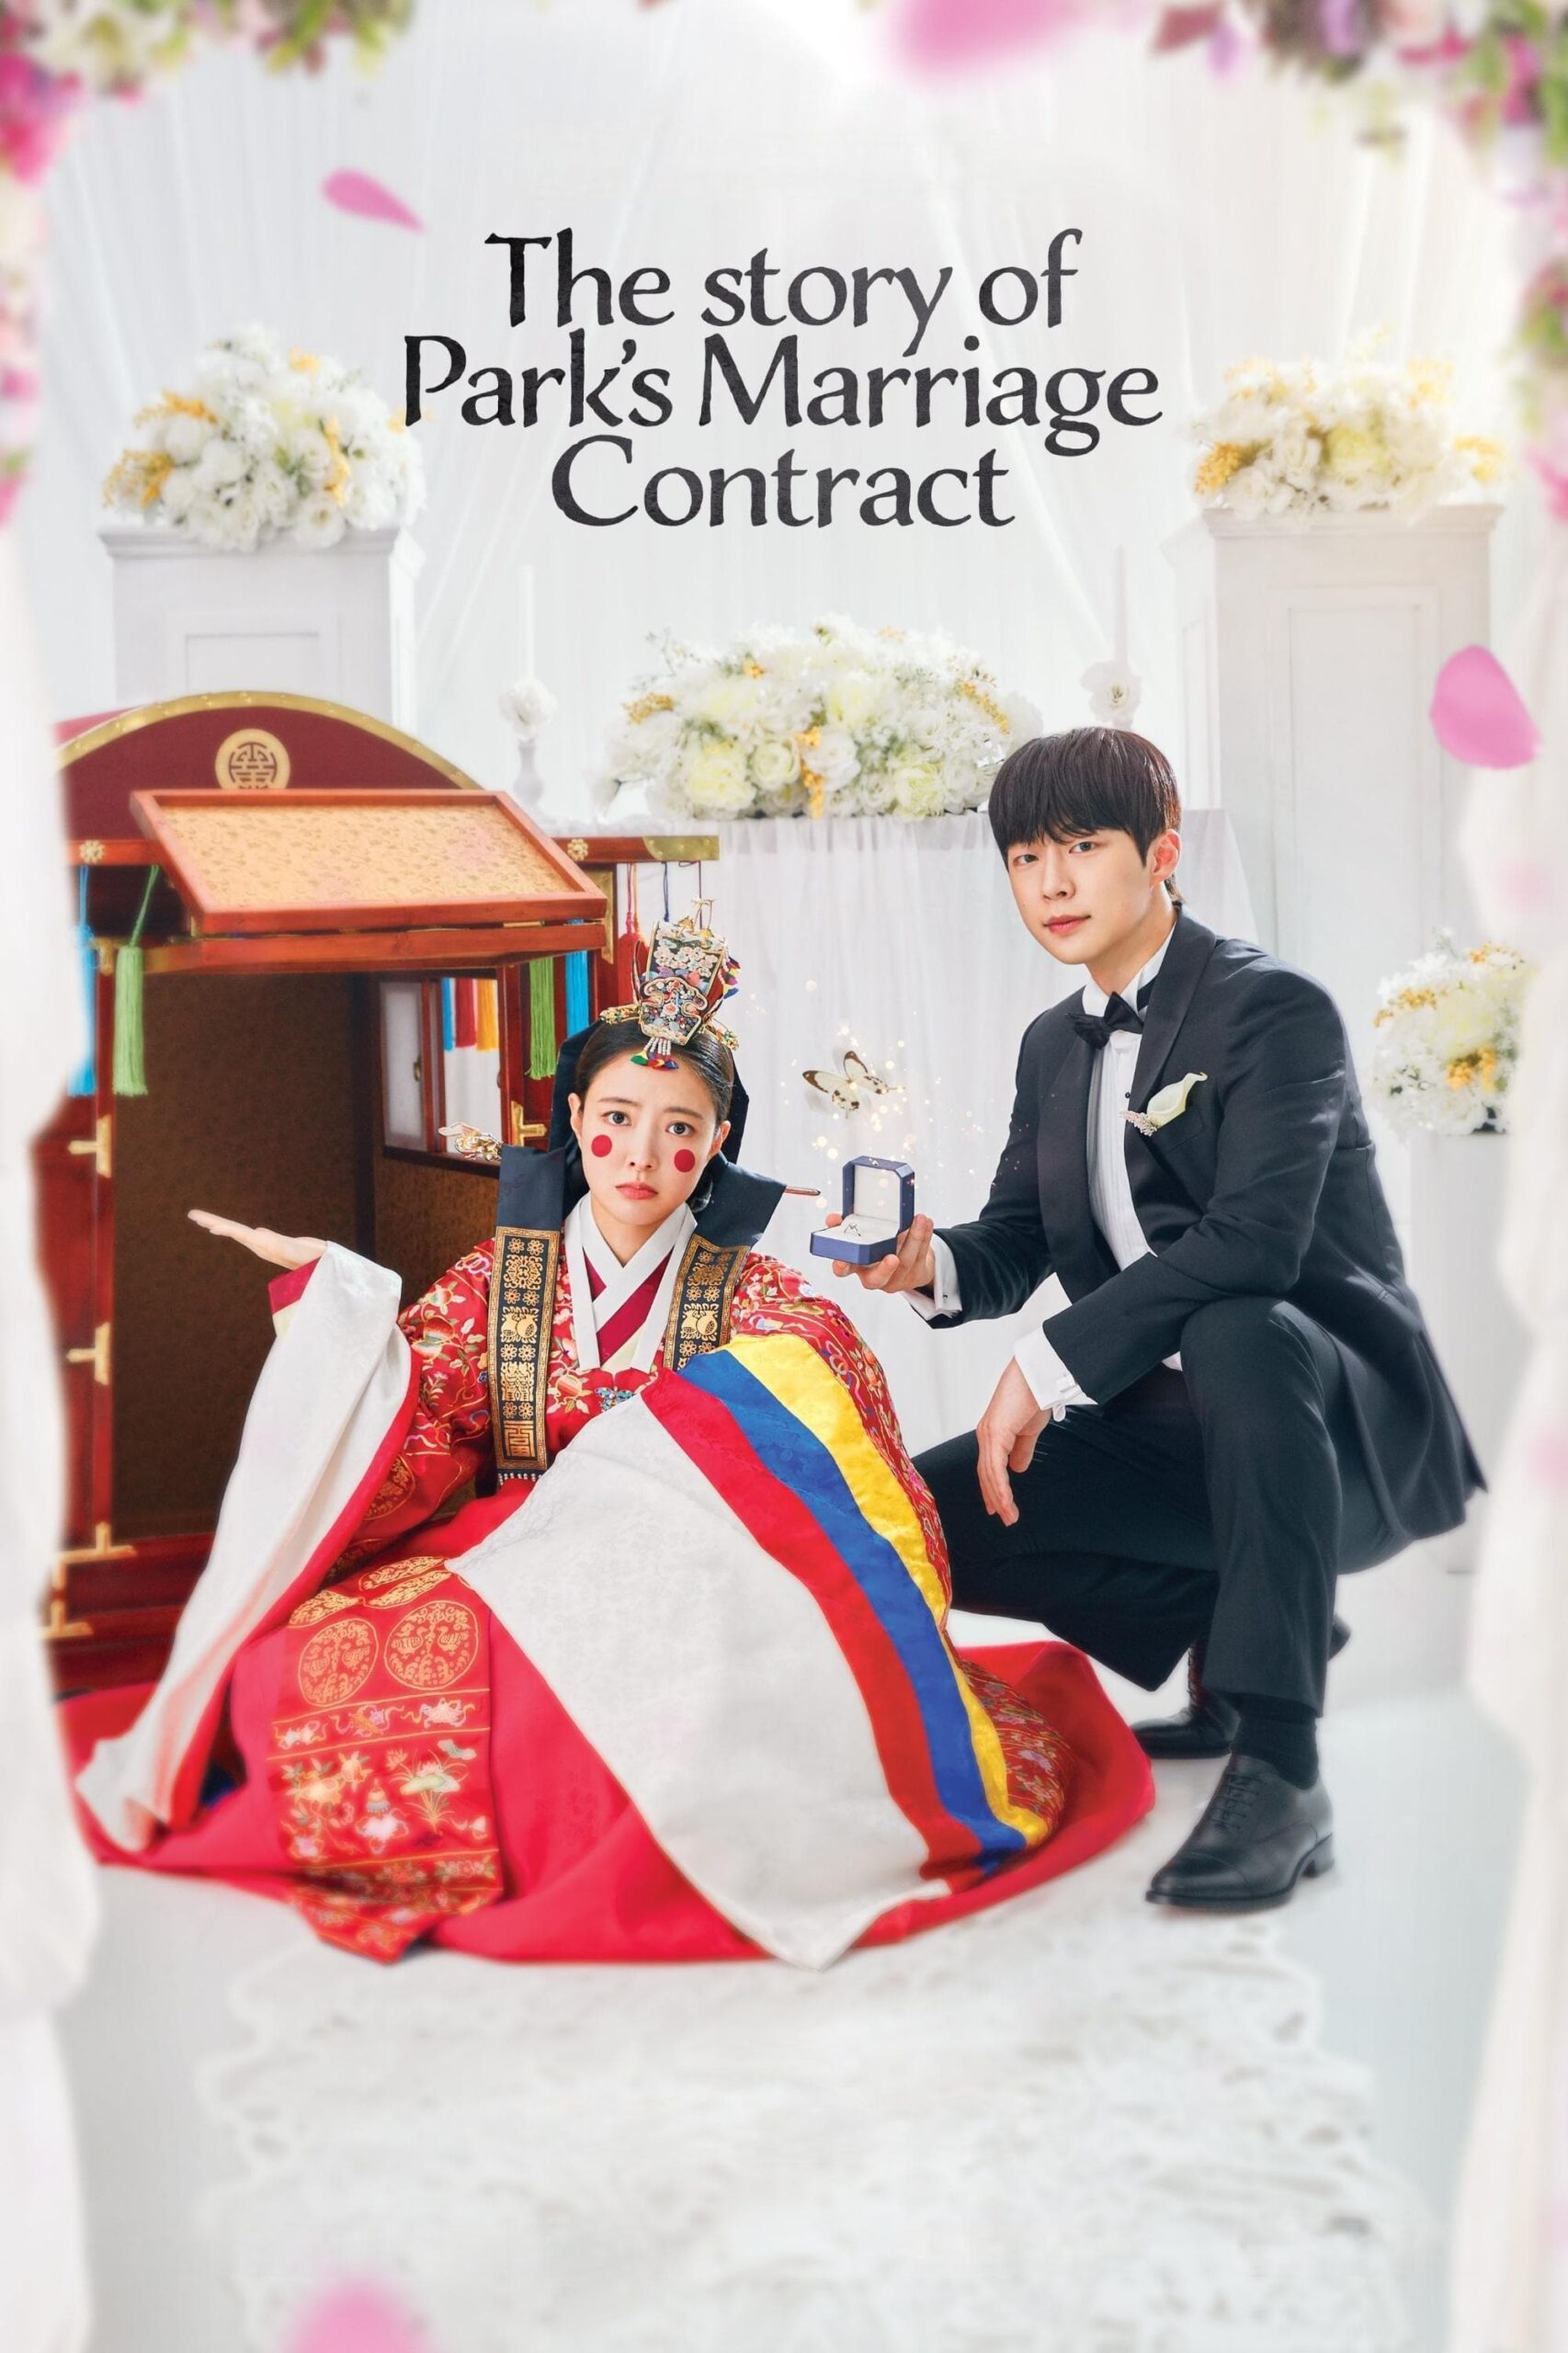 داستان قرارداد ازدواج پارک (The Story of Park’s Marriage Contract)